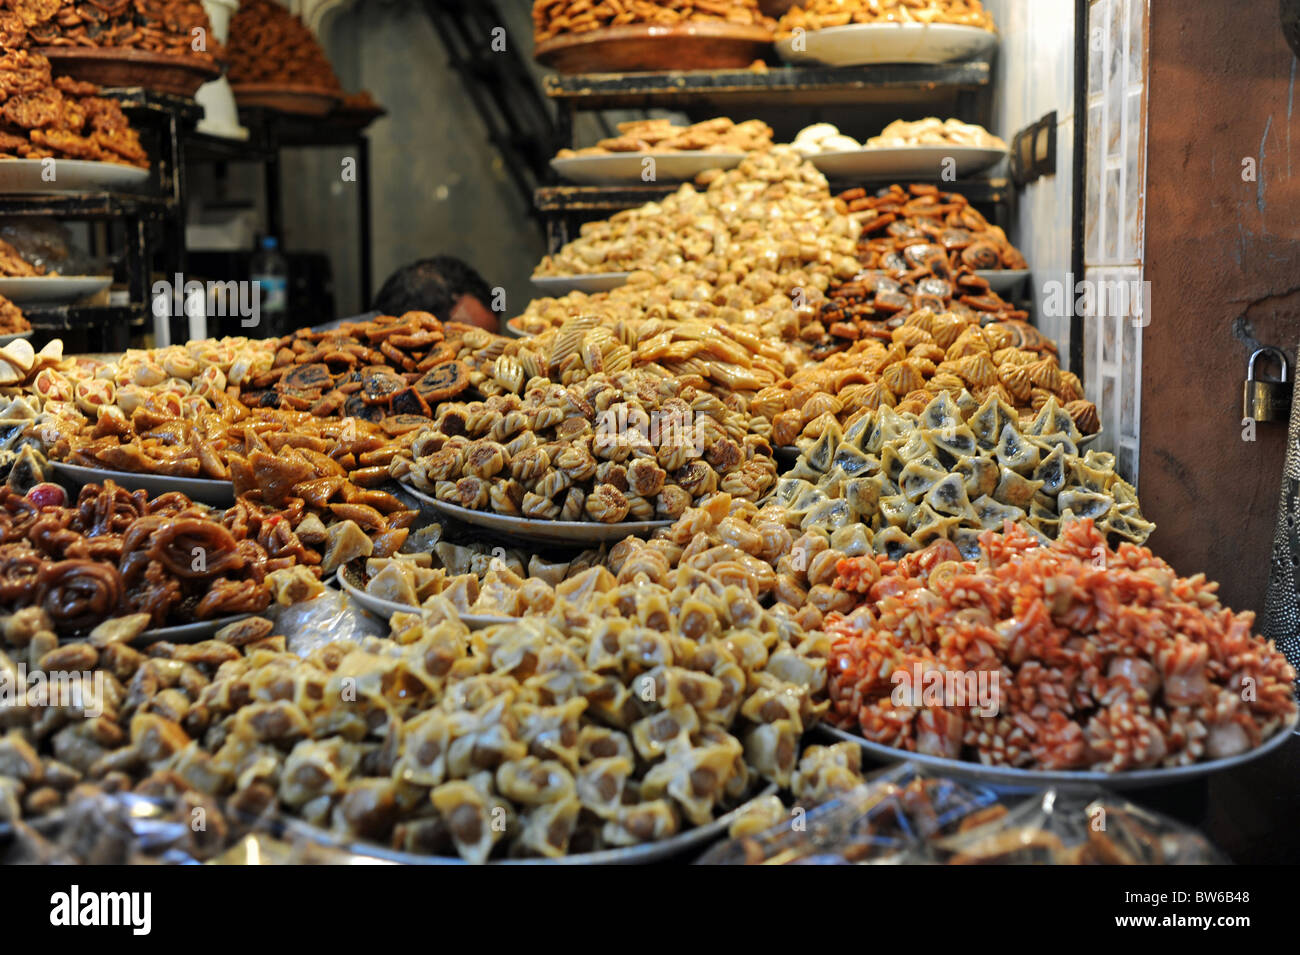 Marrakech marocco 2010 - I dolciumi e la pasticceria in vendita nei souk della medina o antica città murata di Marrakech Foto Stock